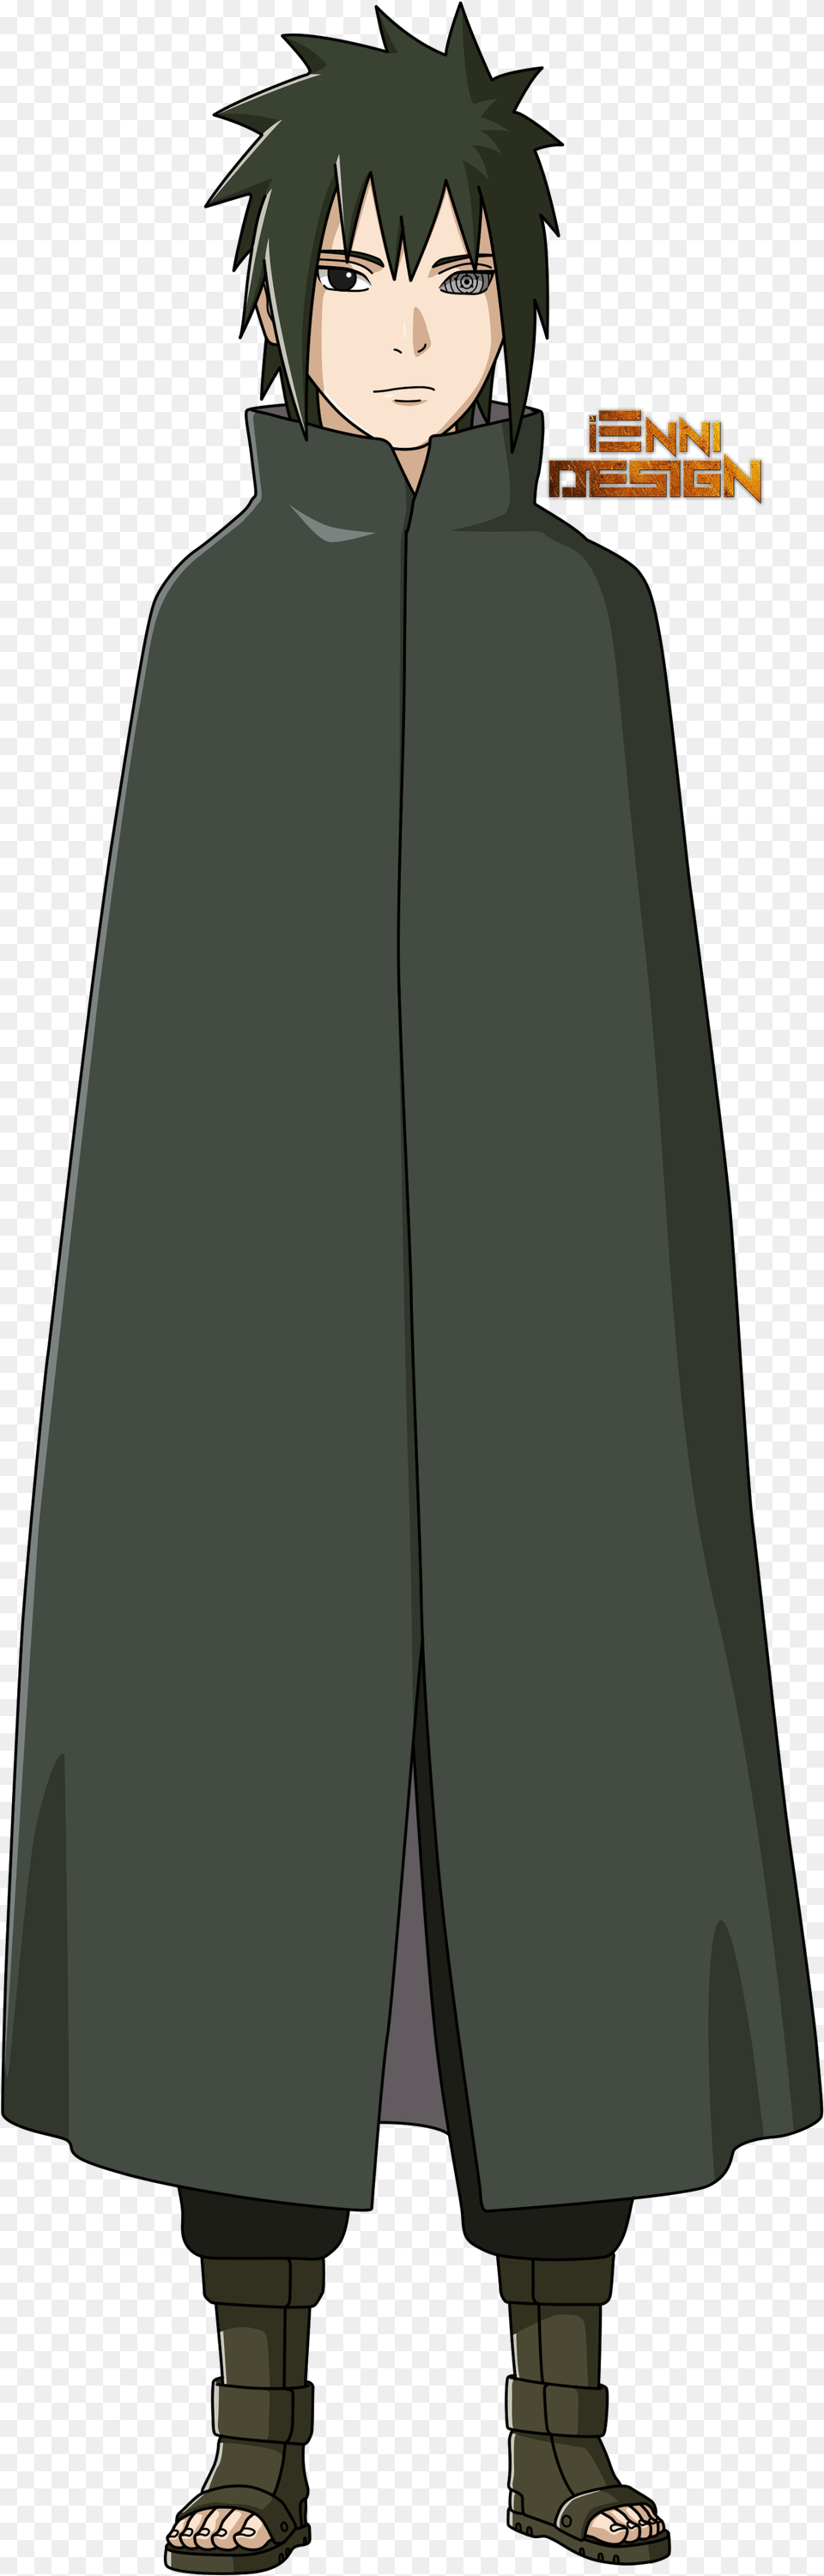 Naruto Shippuden Sasuke Boruto Naruto Characters Drawing Naruto Shippuden Sasuke Shinden, Cape, Clothing, Fashion, Adult Png Image